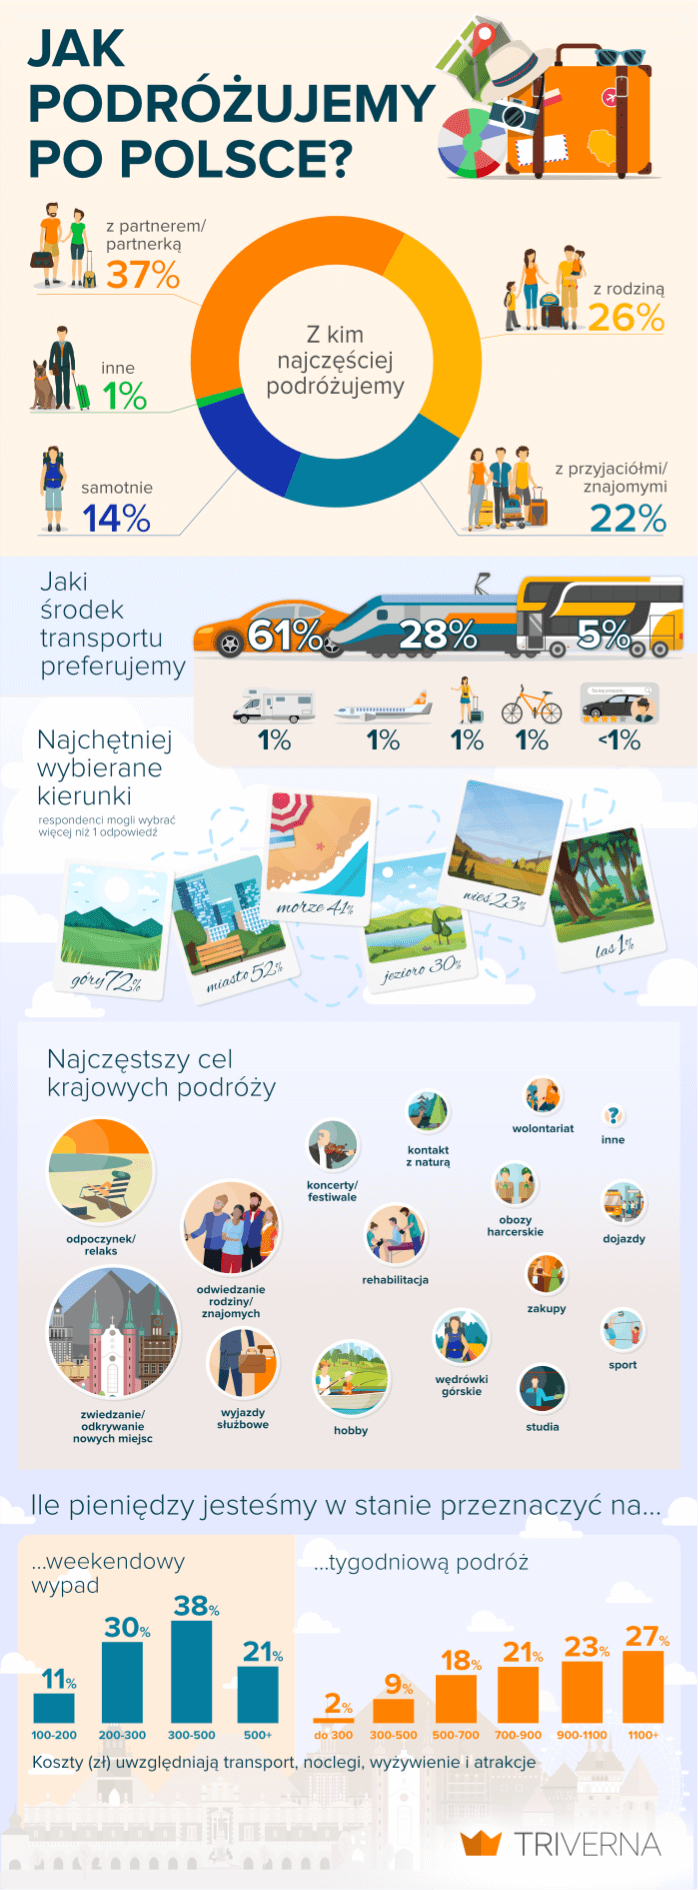 infografika "jak podróżujemy po polsce"